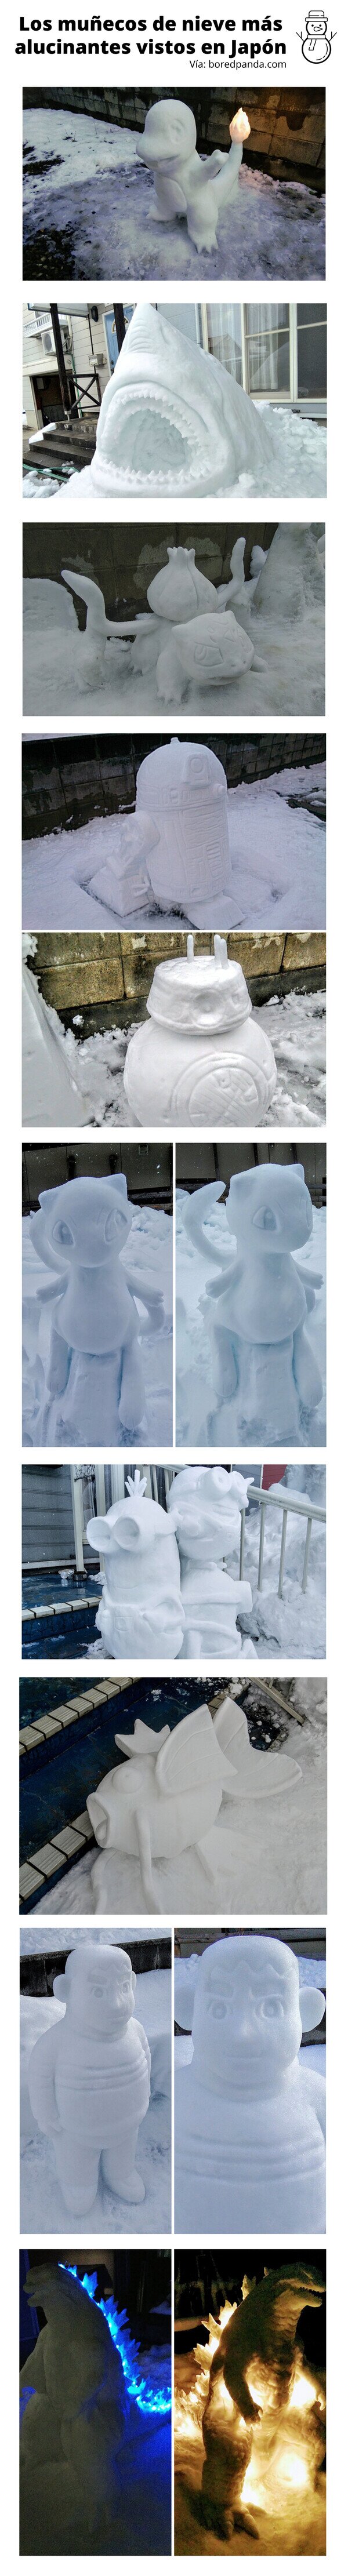 Meme_otros - Los muñecos de nieve más alucinantes vistos en Japón